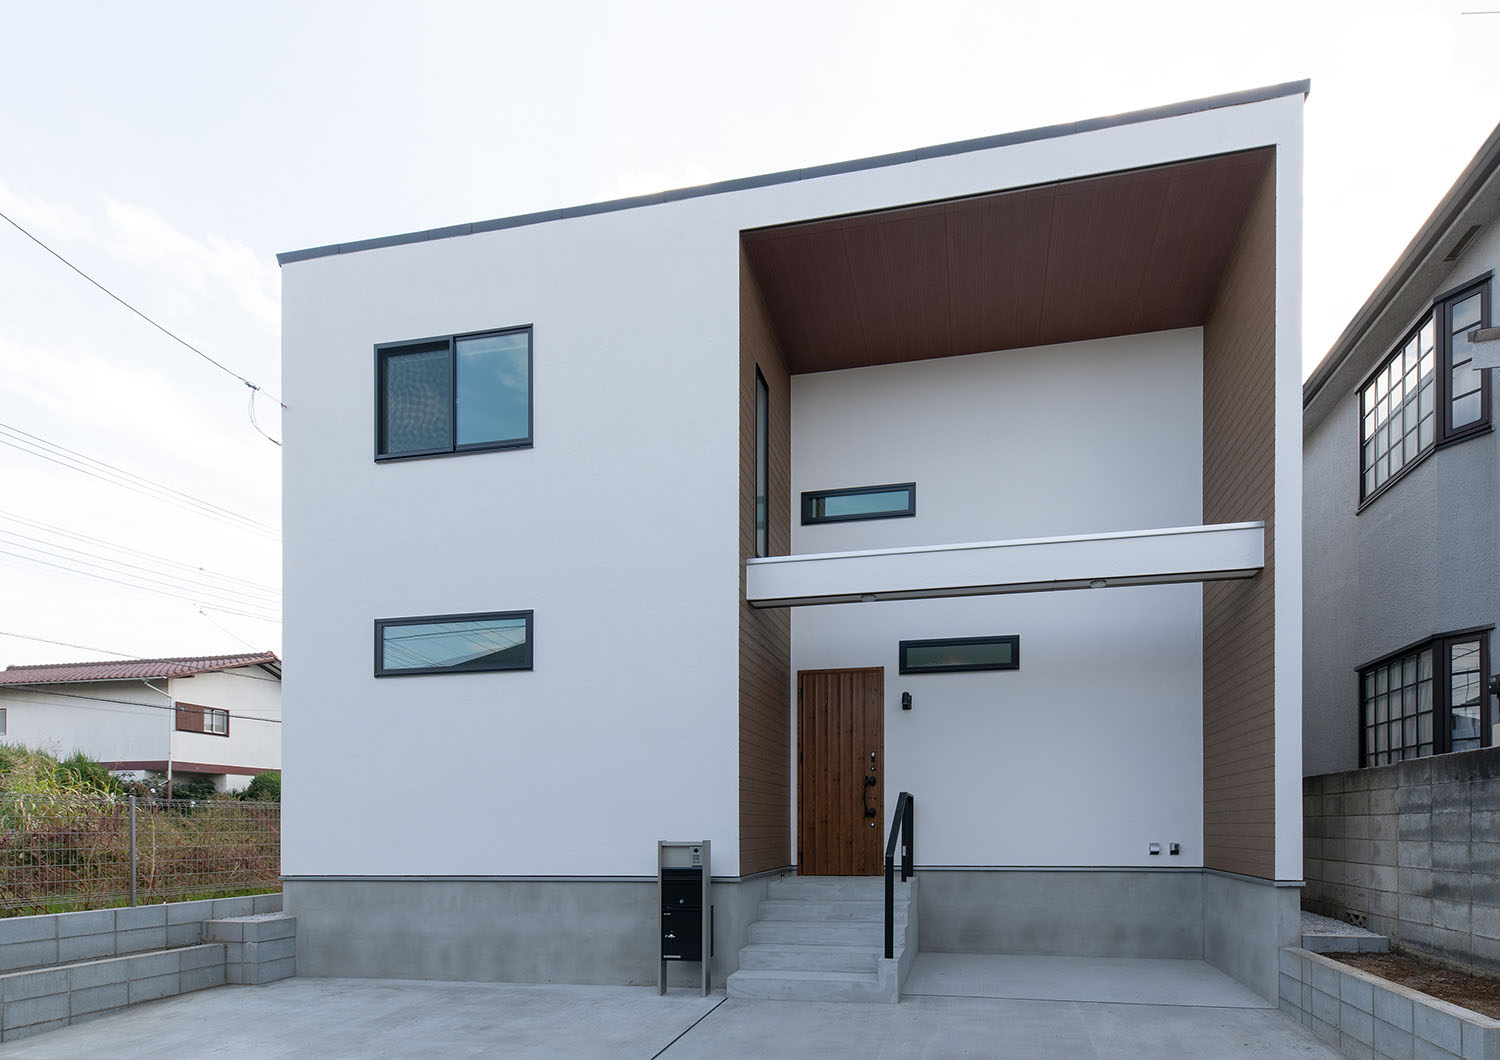 白いキューブ状の外観で、コンクリートの玄関アプローチがある住宅・デザイン住宅